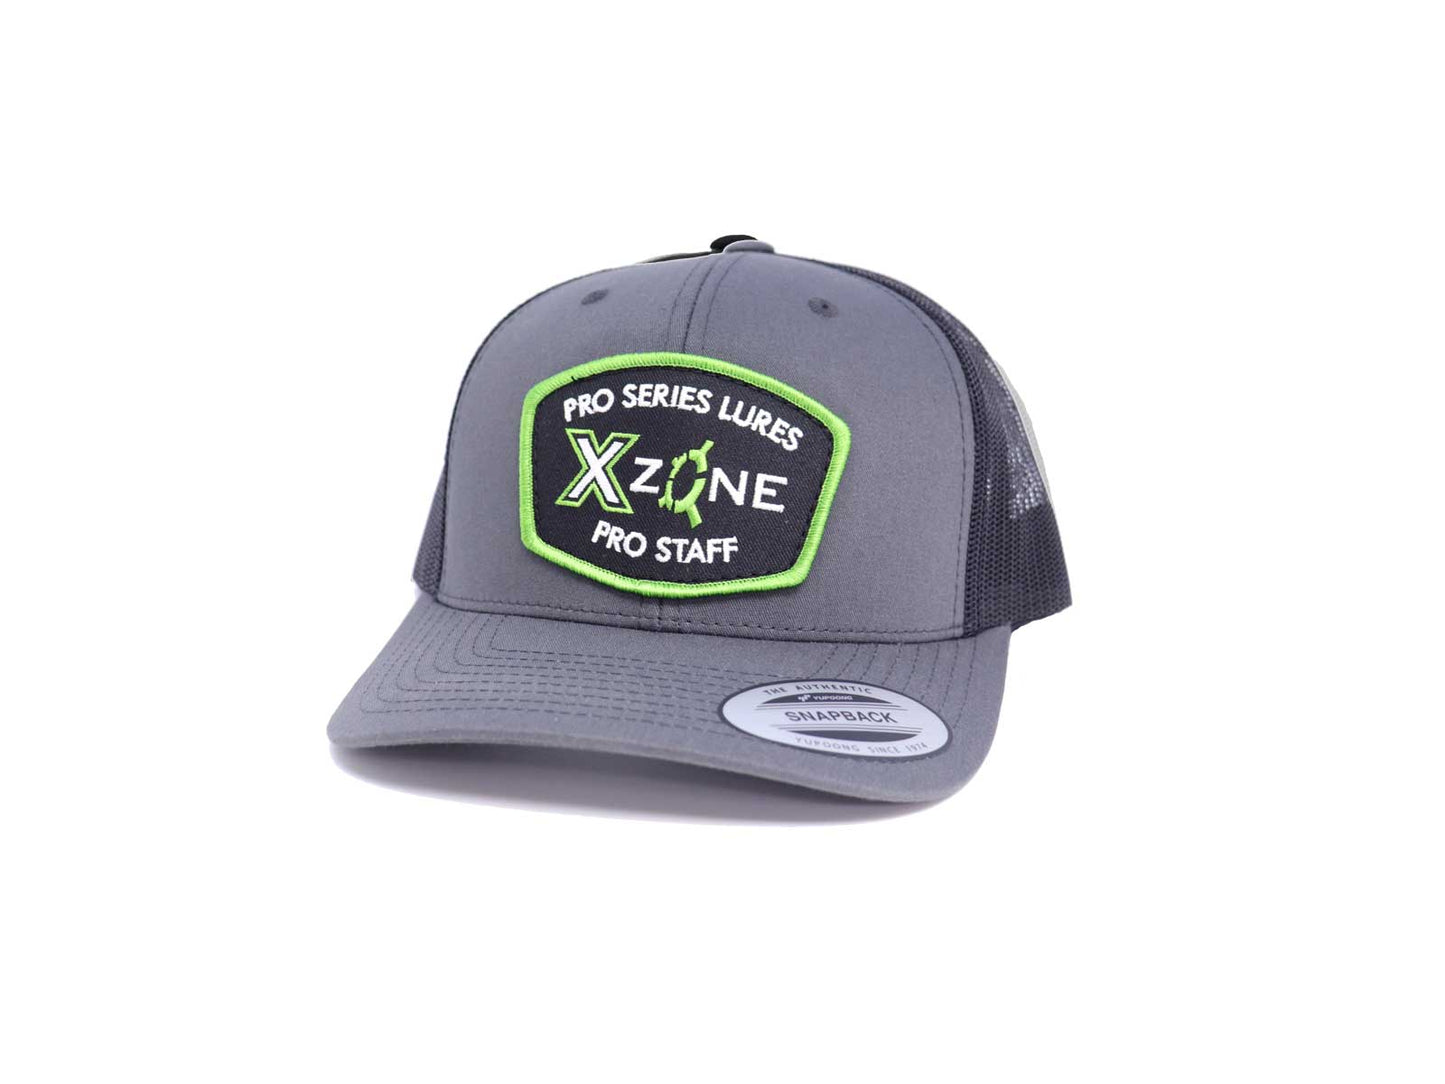 X Zone Pro Staff Trucker Hat - Charcoal Black